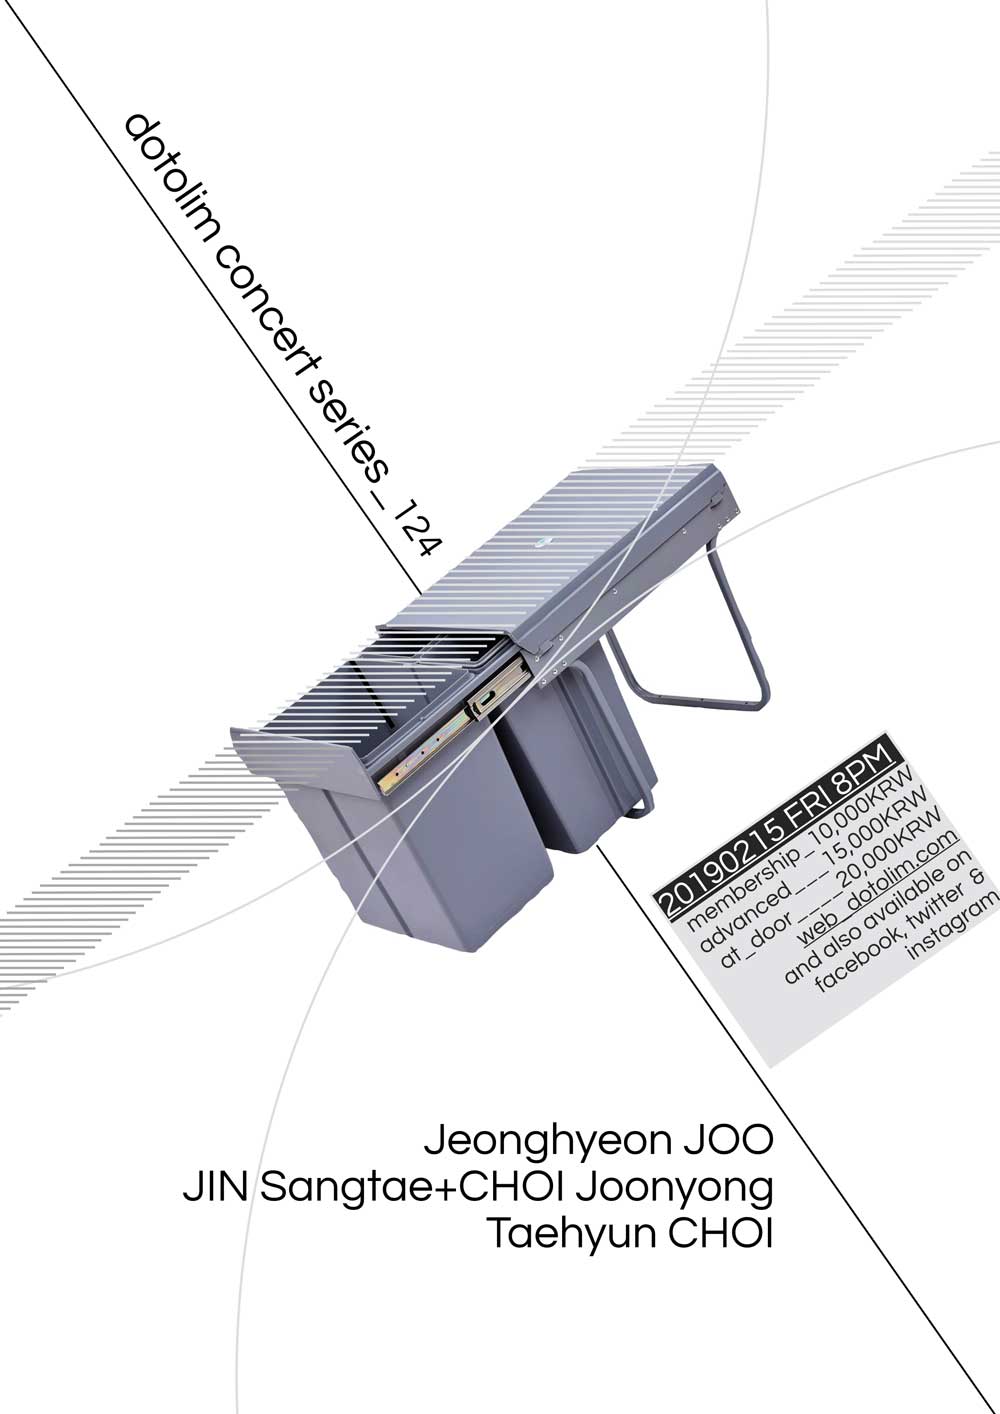 닻올림 연주회_124 주정현 Jeonghyeon JOO / 최준용 CHOI Joonyong + 진상태 JIN Sangtae / 최태현 Taehyun CHOI